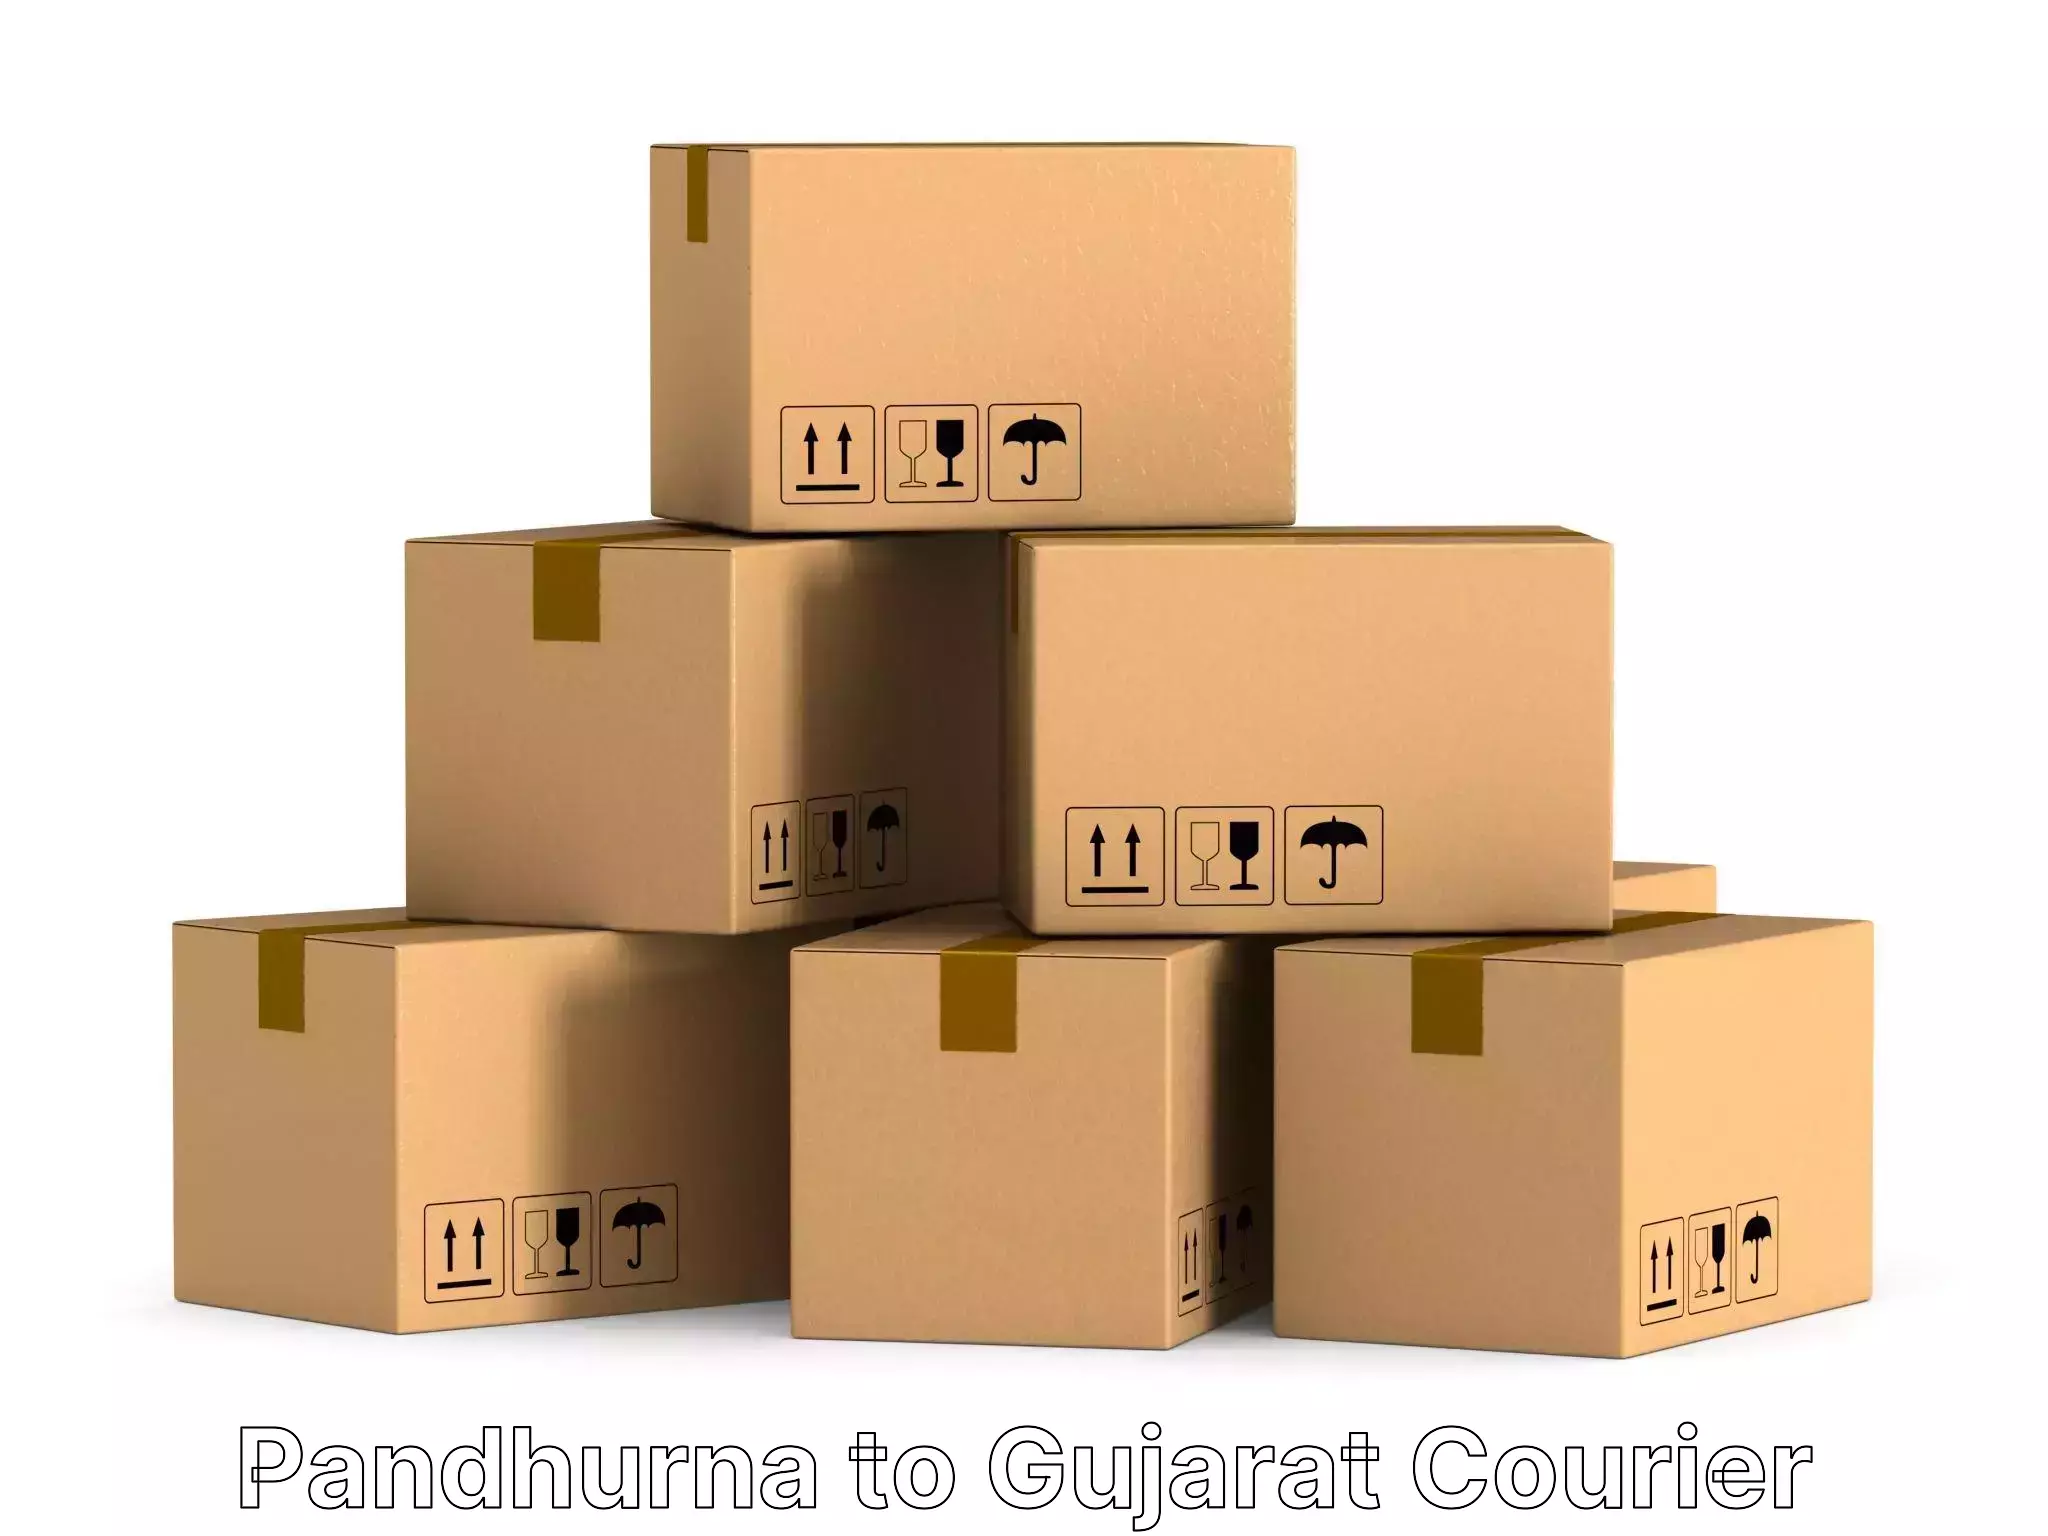 Furniture moving experts Pandhurna to Rajkot